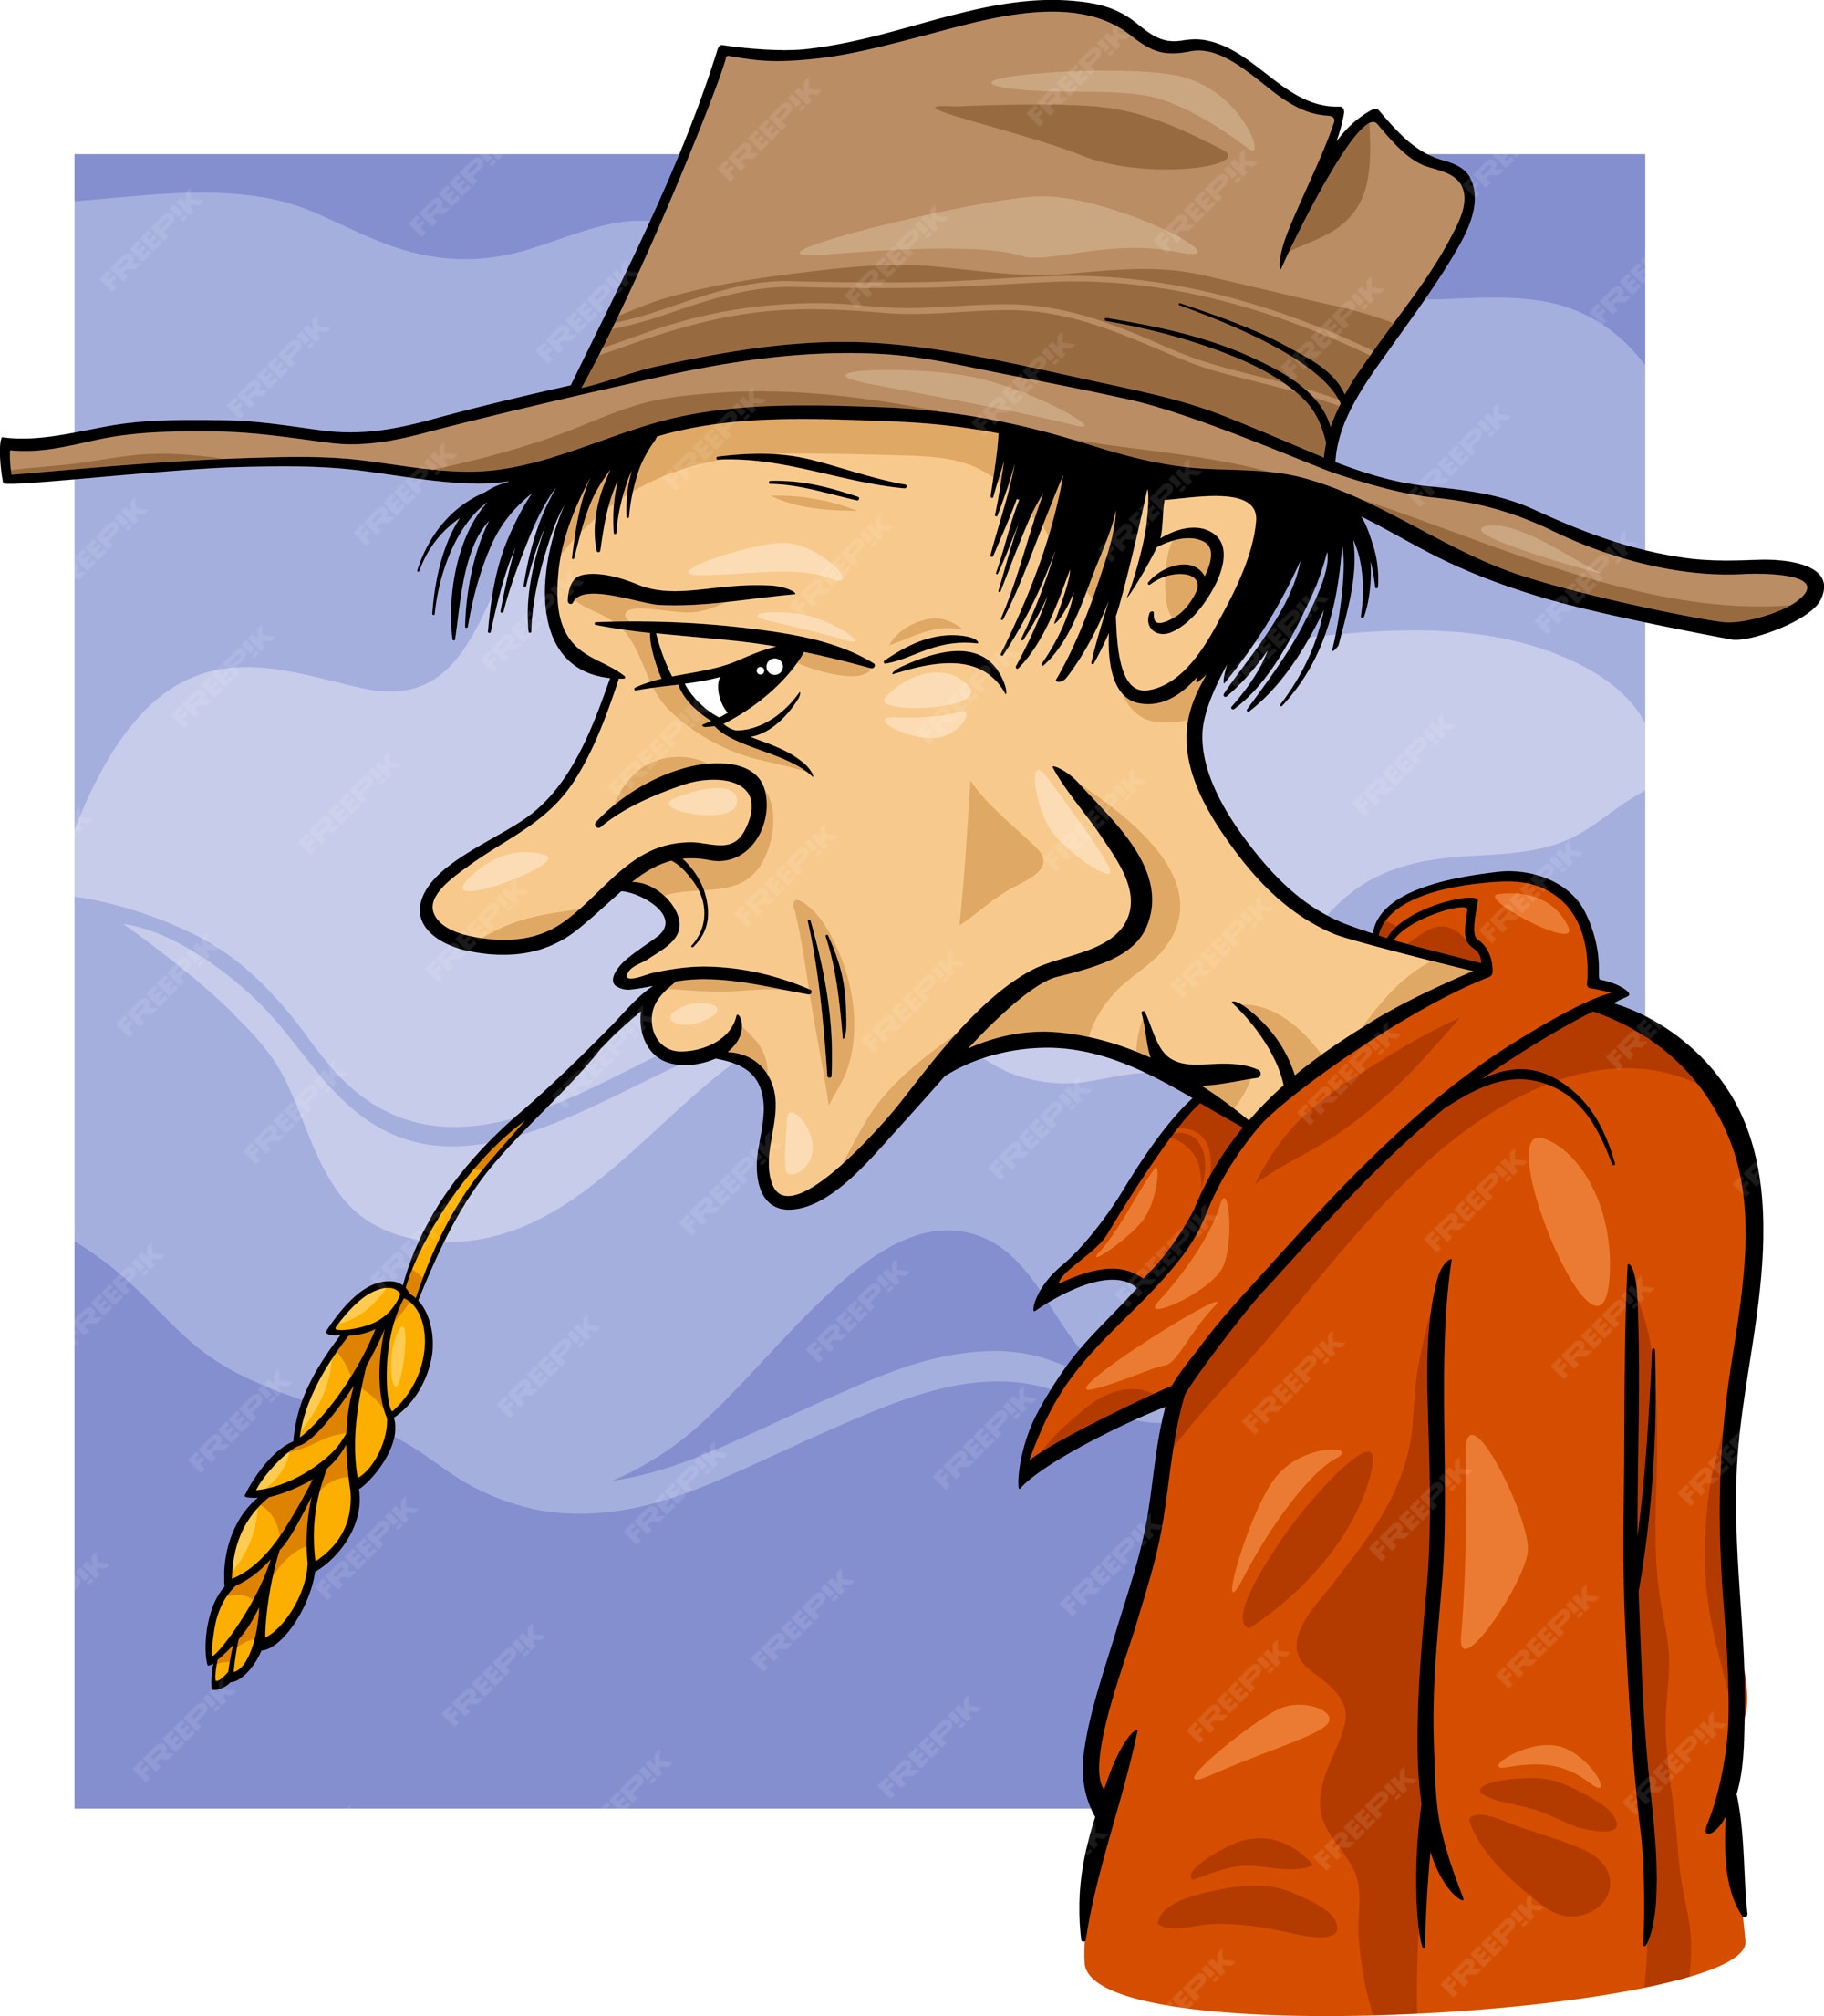 country-farmer-cartoon-illustration_11460-4417.jpg